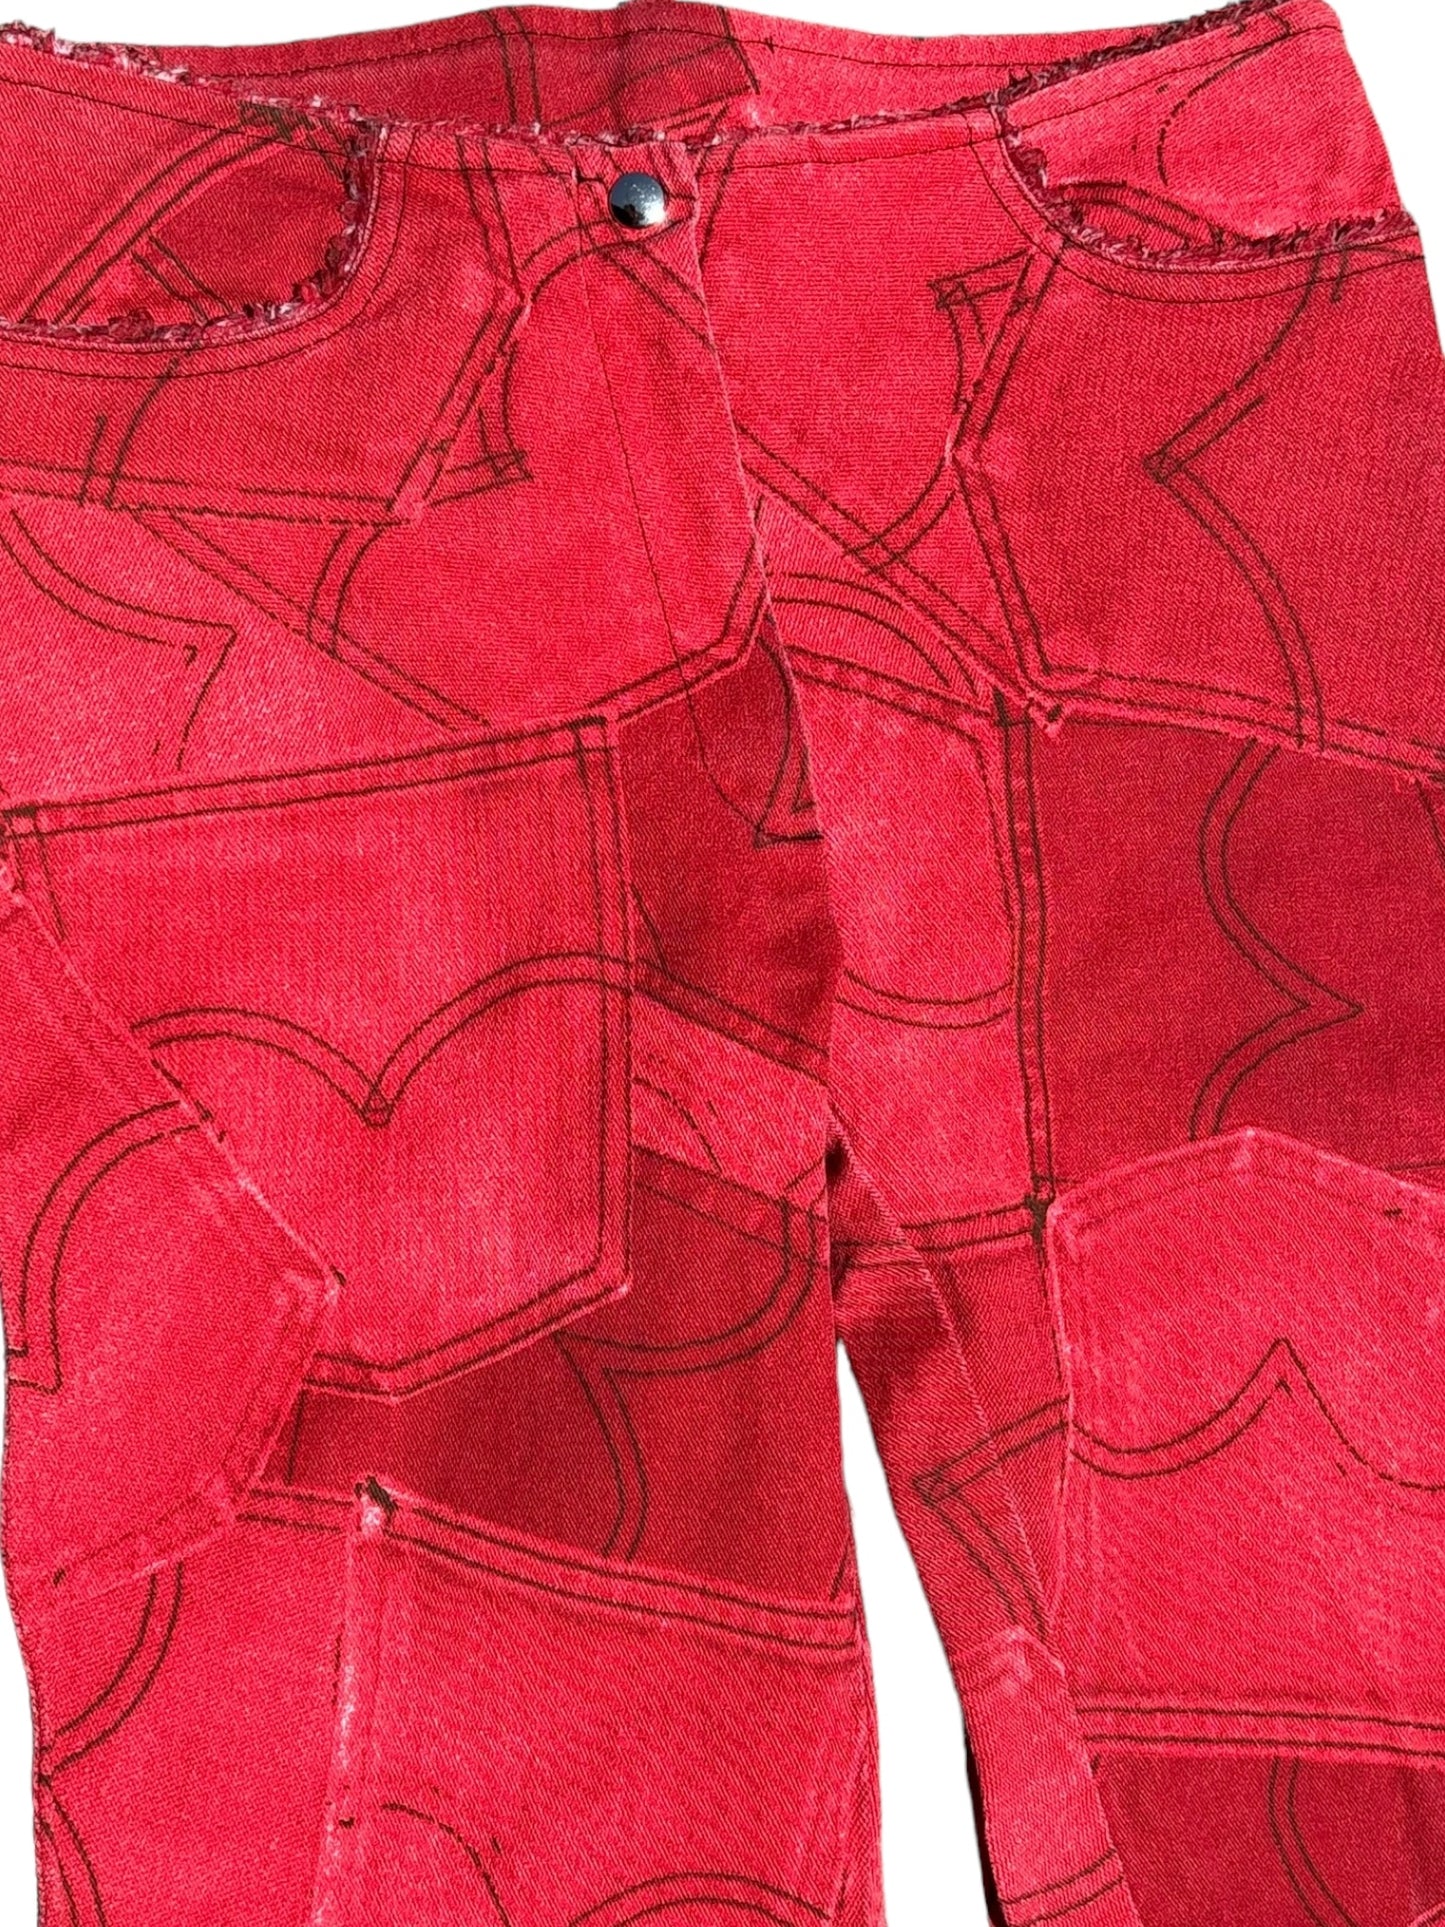 Vintage Red Pocket Jeans - XS